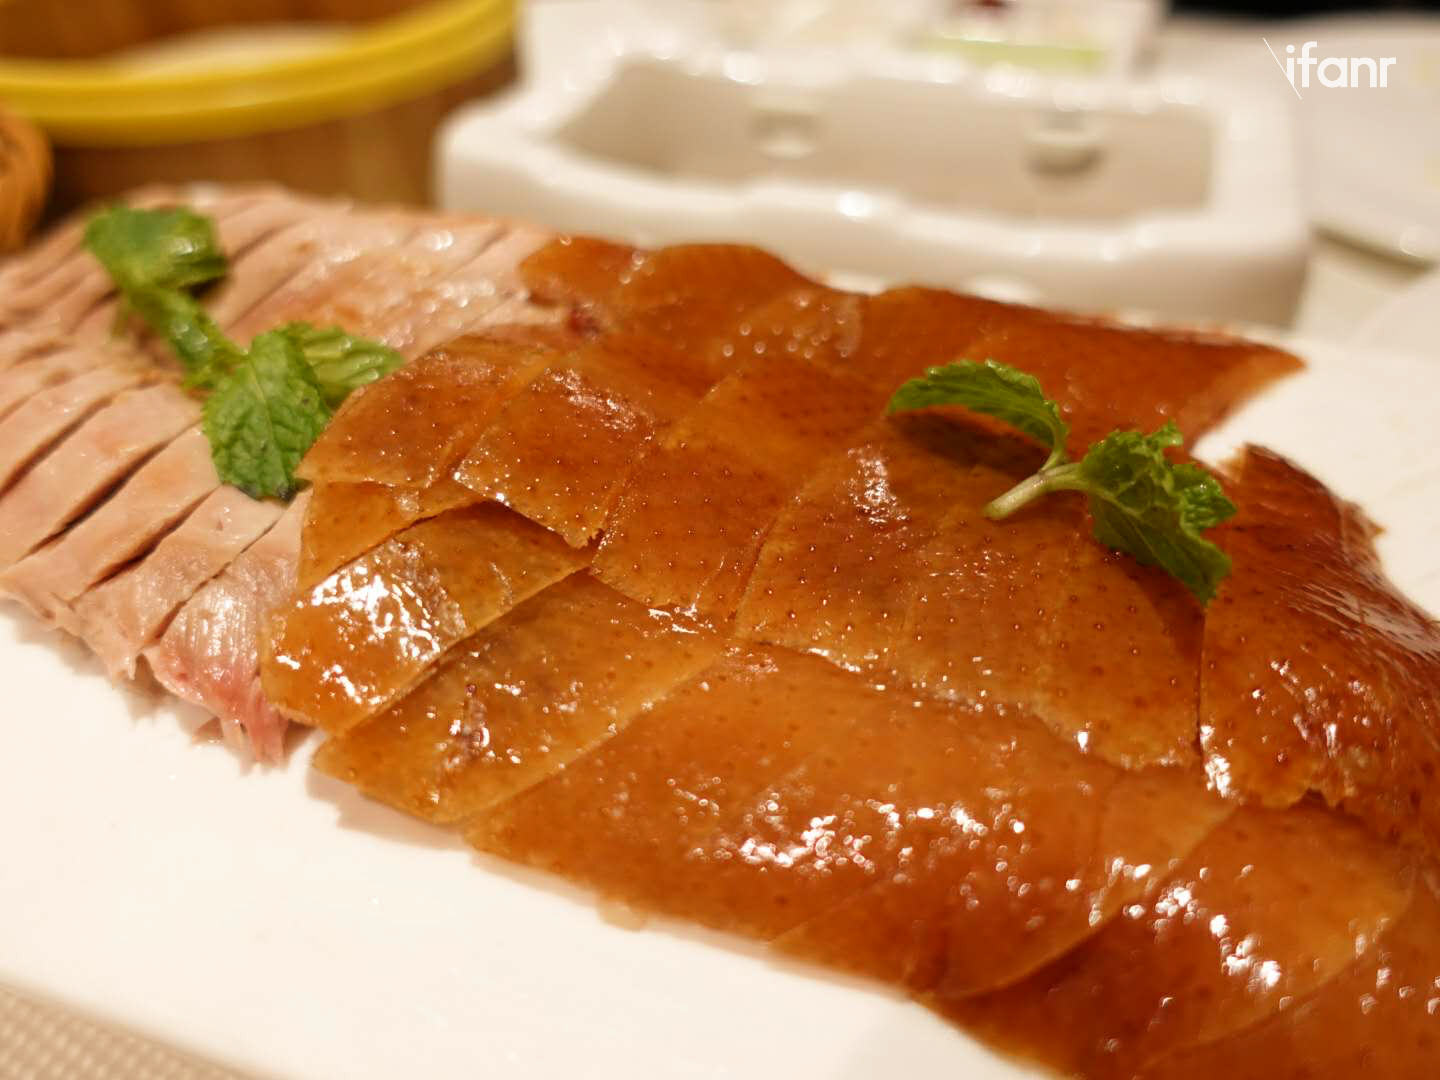 中国人最爱吃什么菜？有人分析了12555份菜谱……